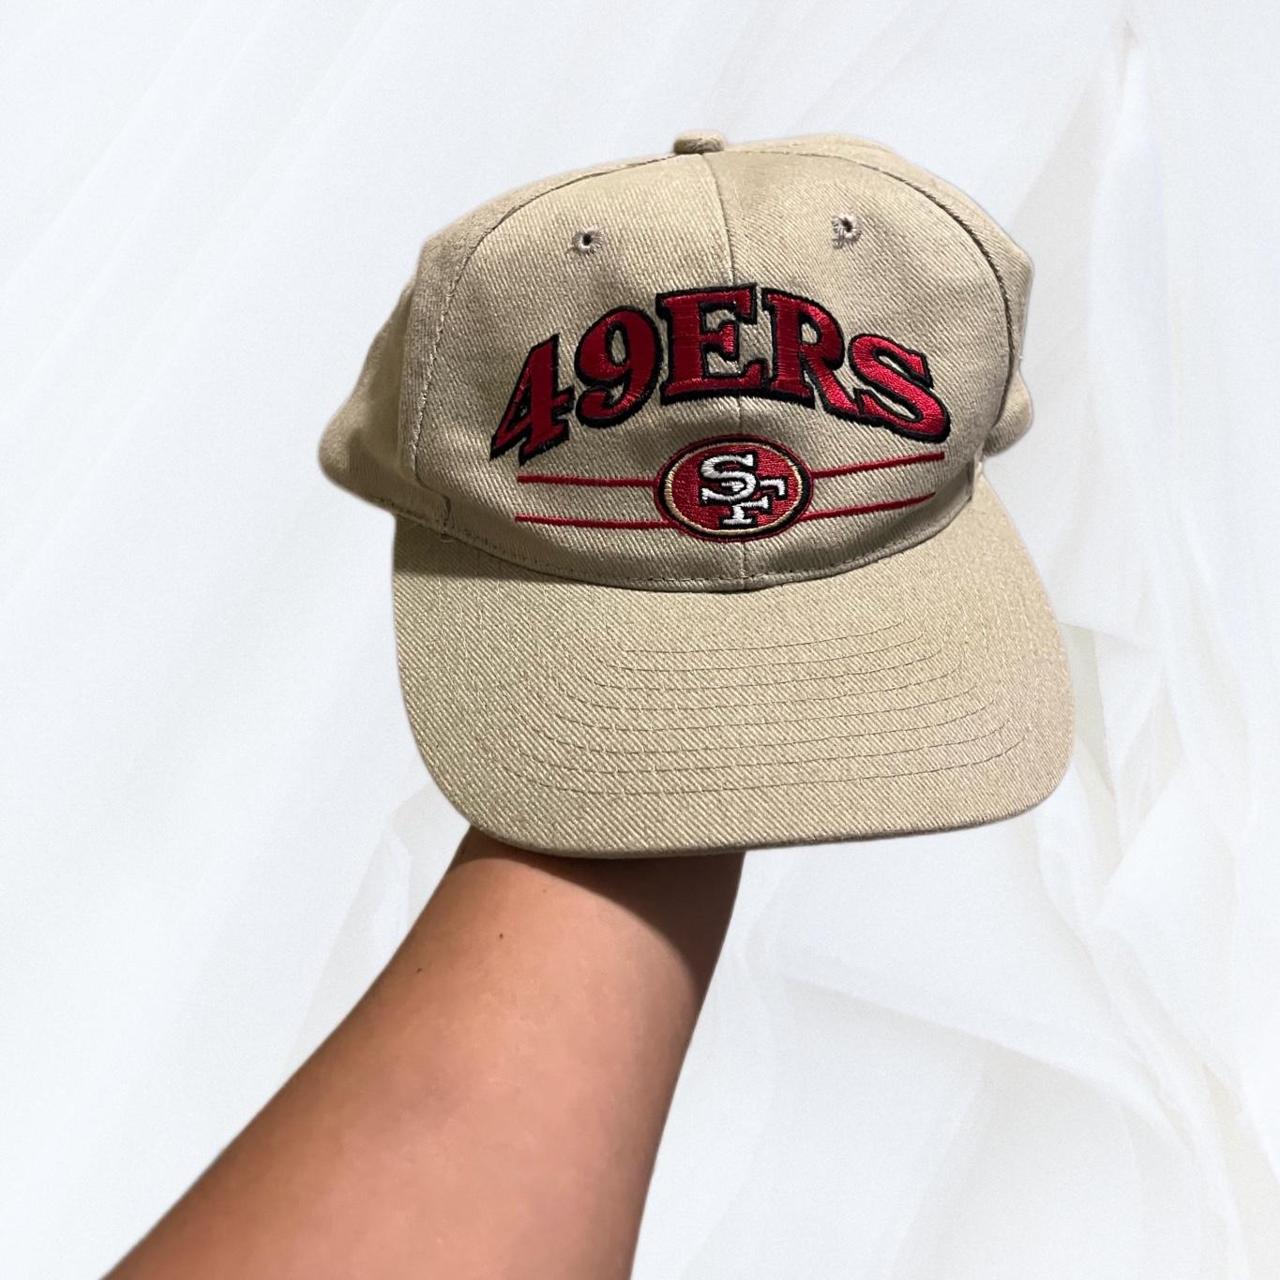 cream 49ers hat